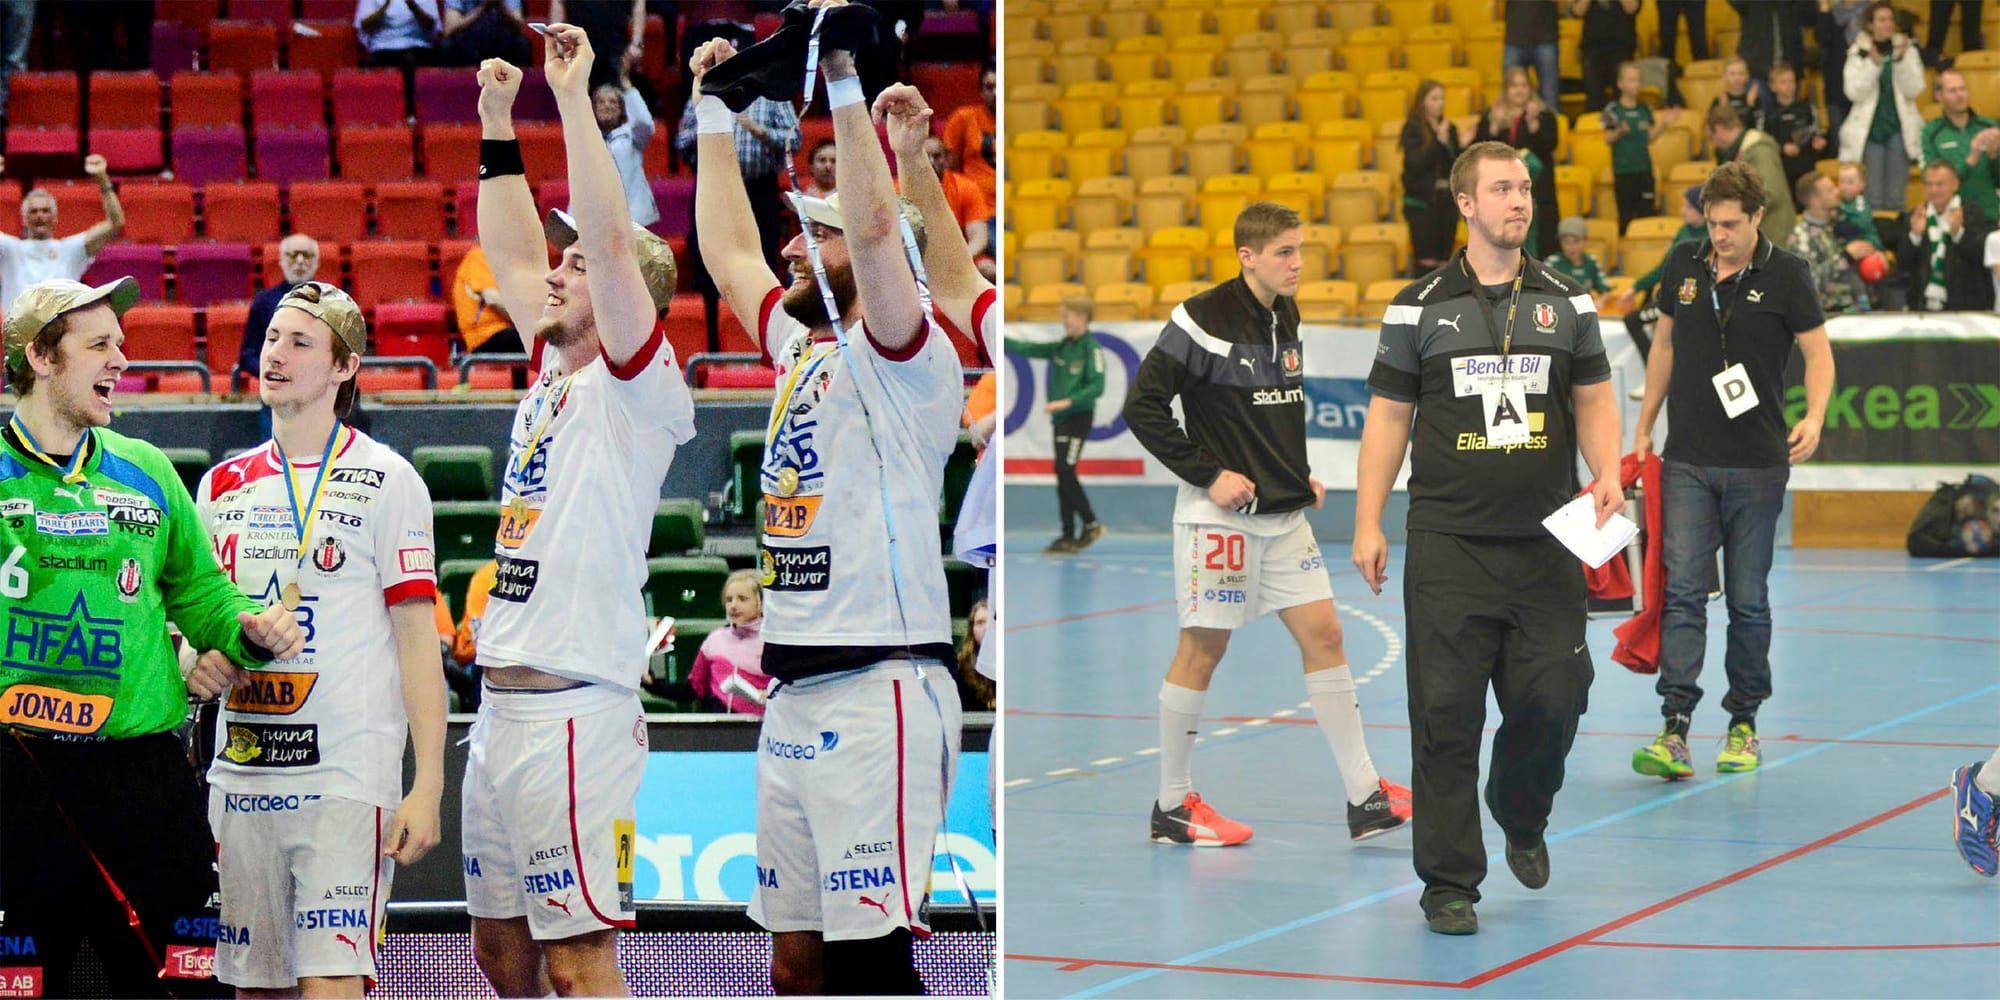 Från SM-guld till tredjedivisionen. I maj 2013 firade David Löfgren tillsammans med Drottarna SM-guld. I mars 2017 vandrade han ut som tränare för ett division 1-lag.